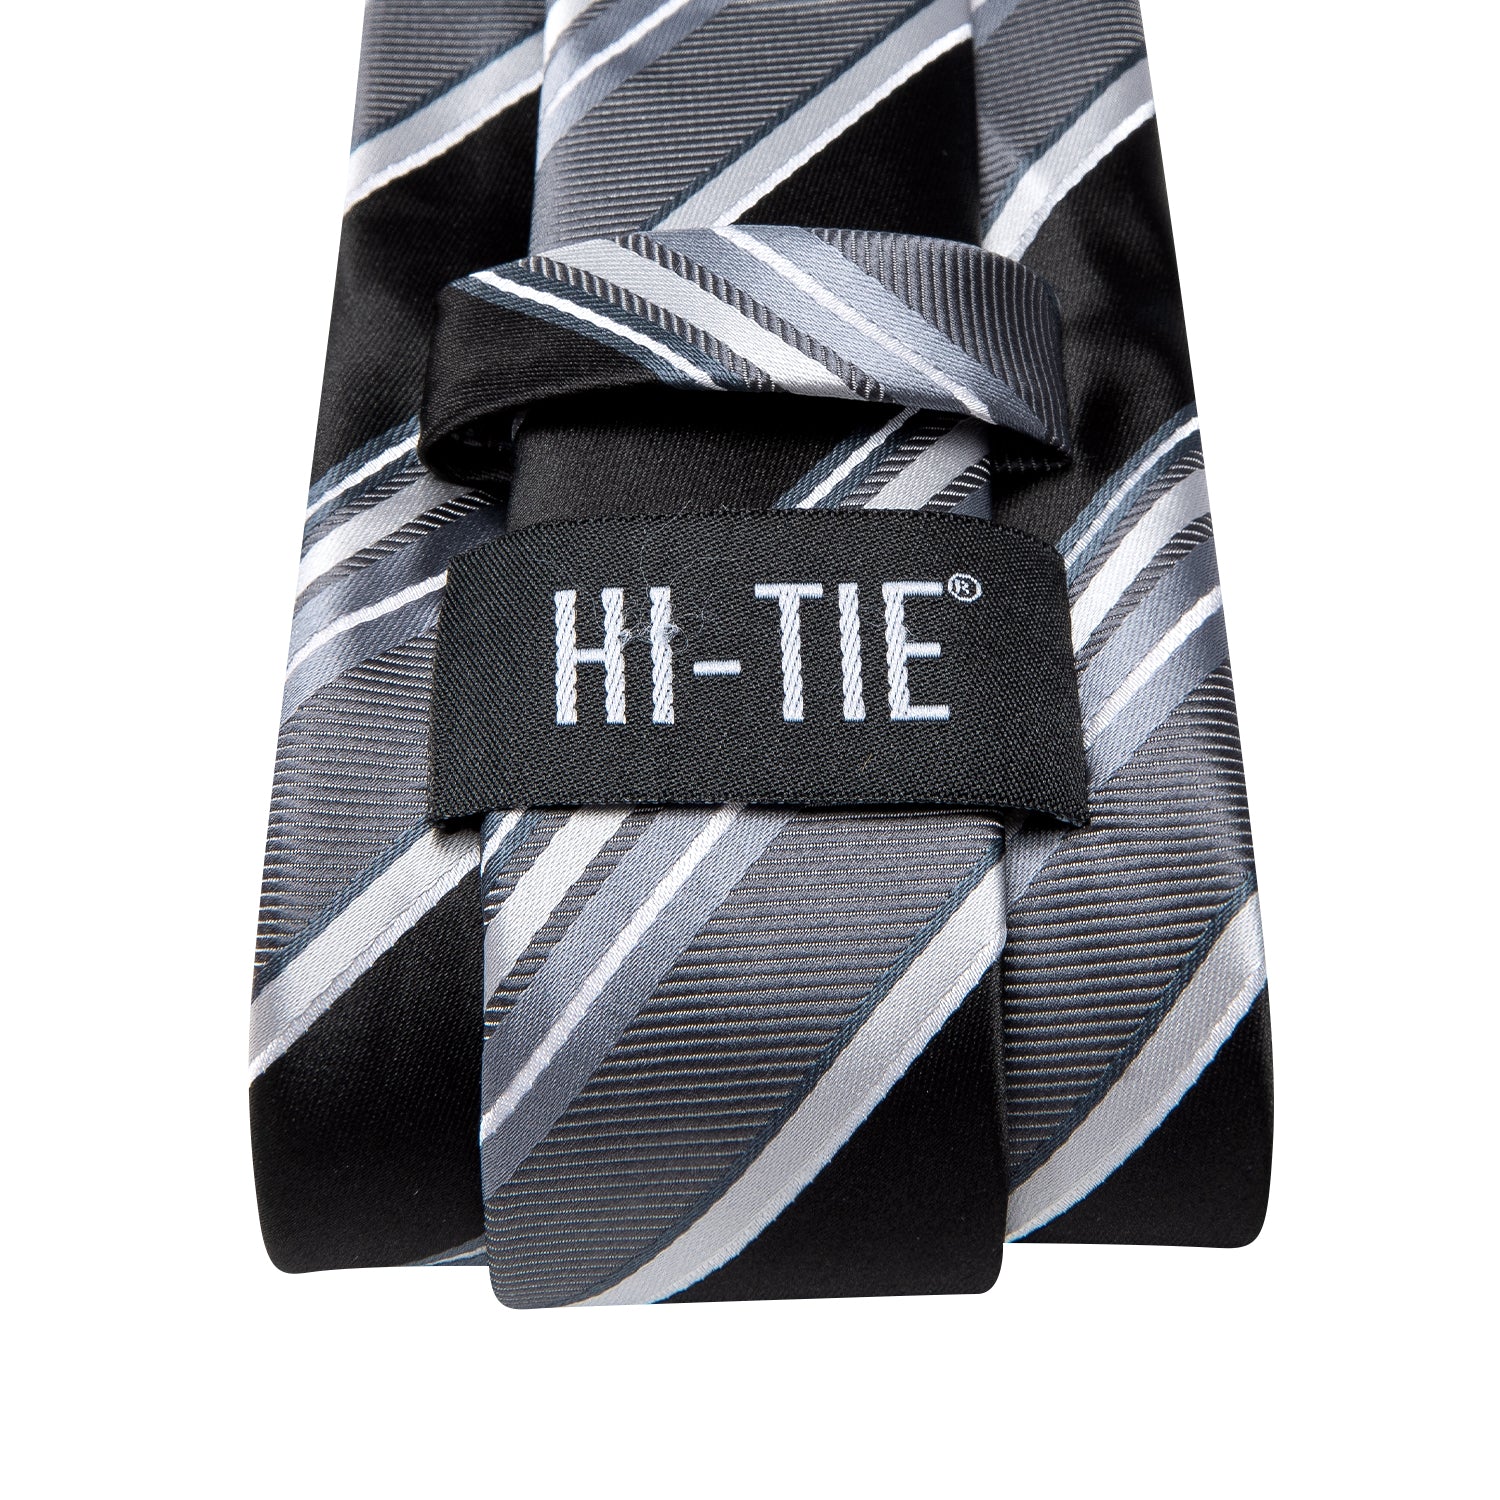 Hi-Tie Black White Striped Men's Tie Pocket Square Cufflinks Set